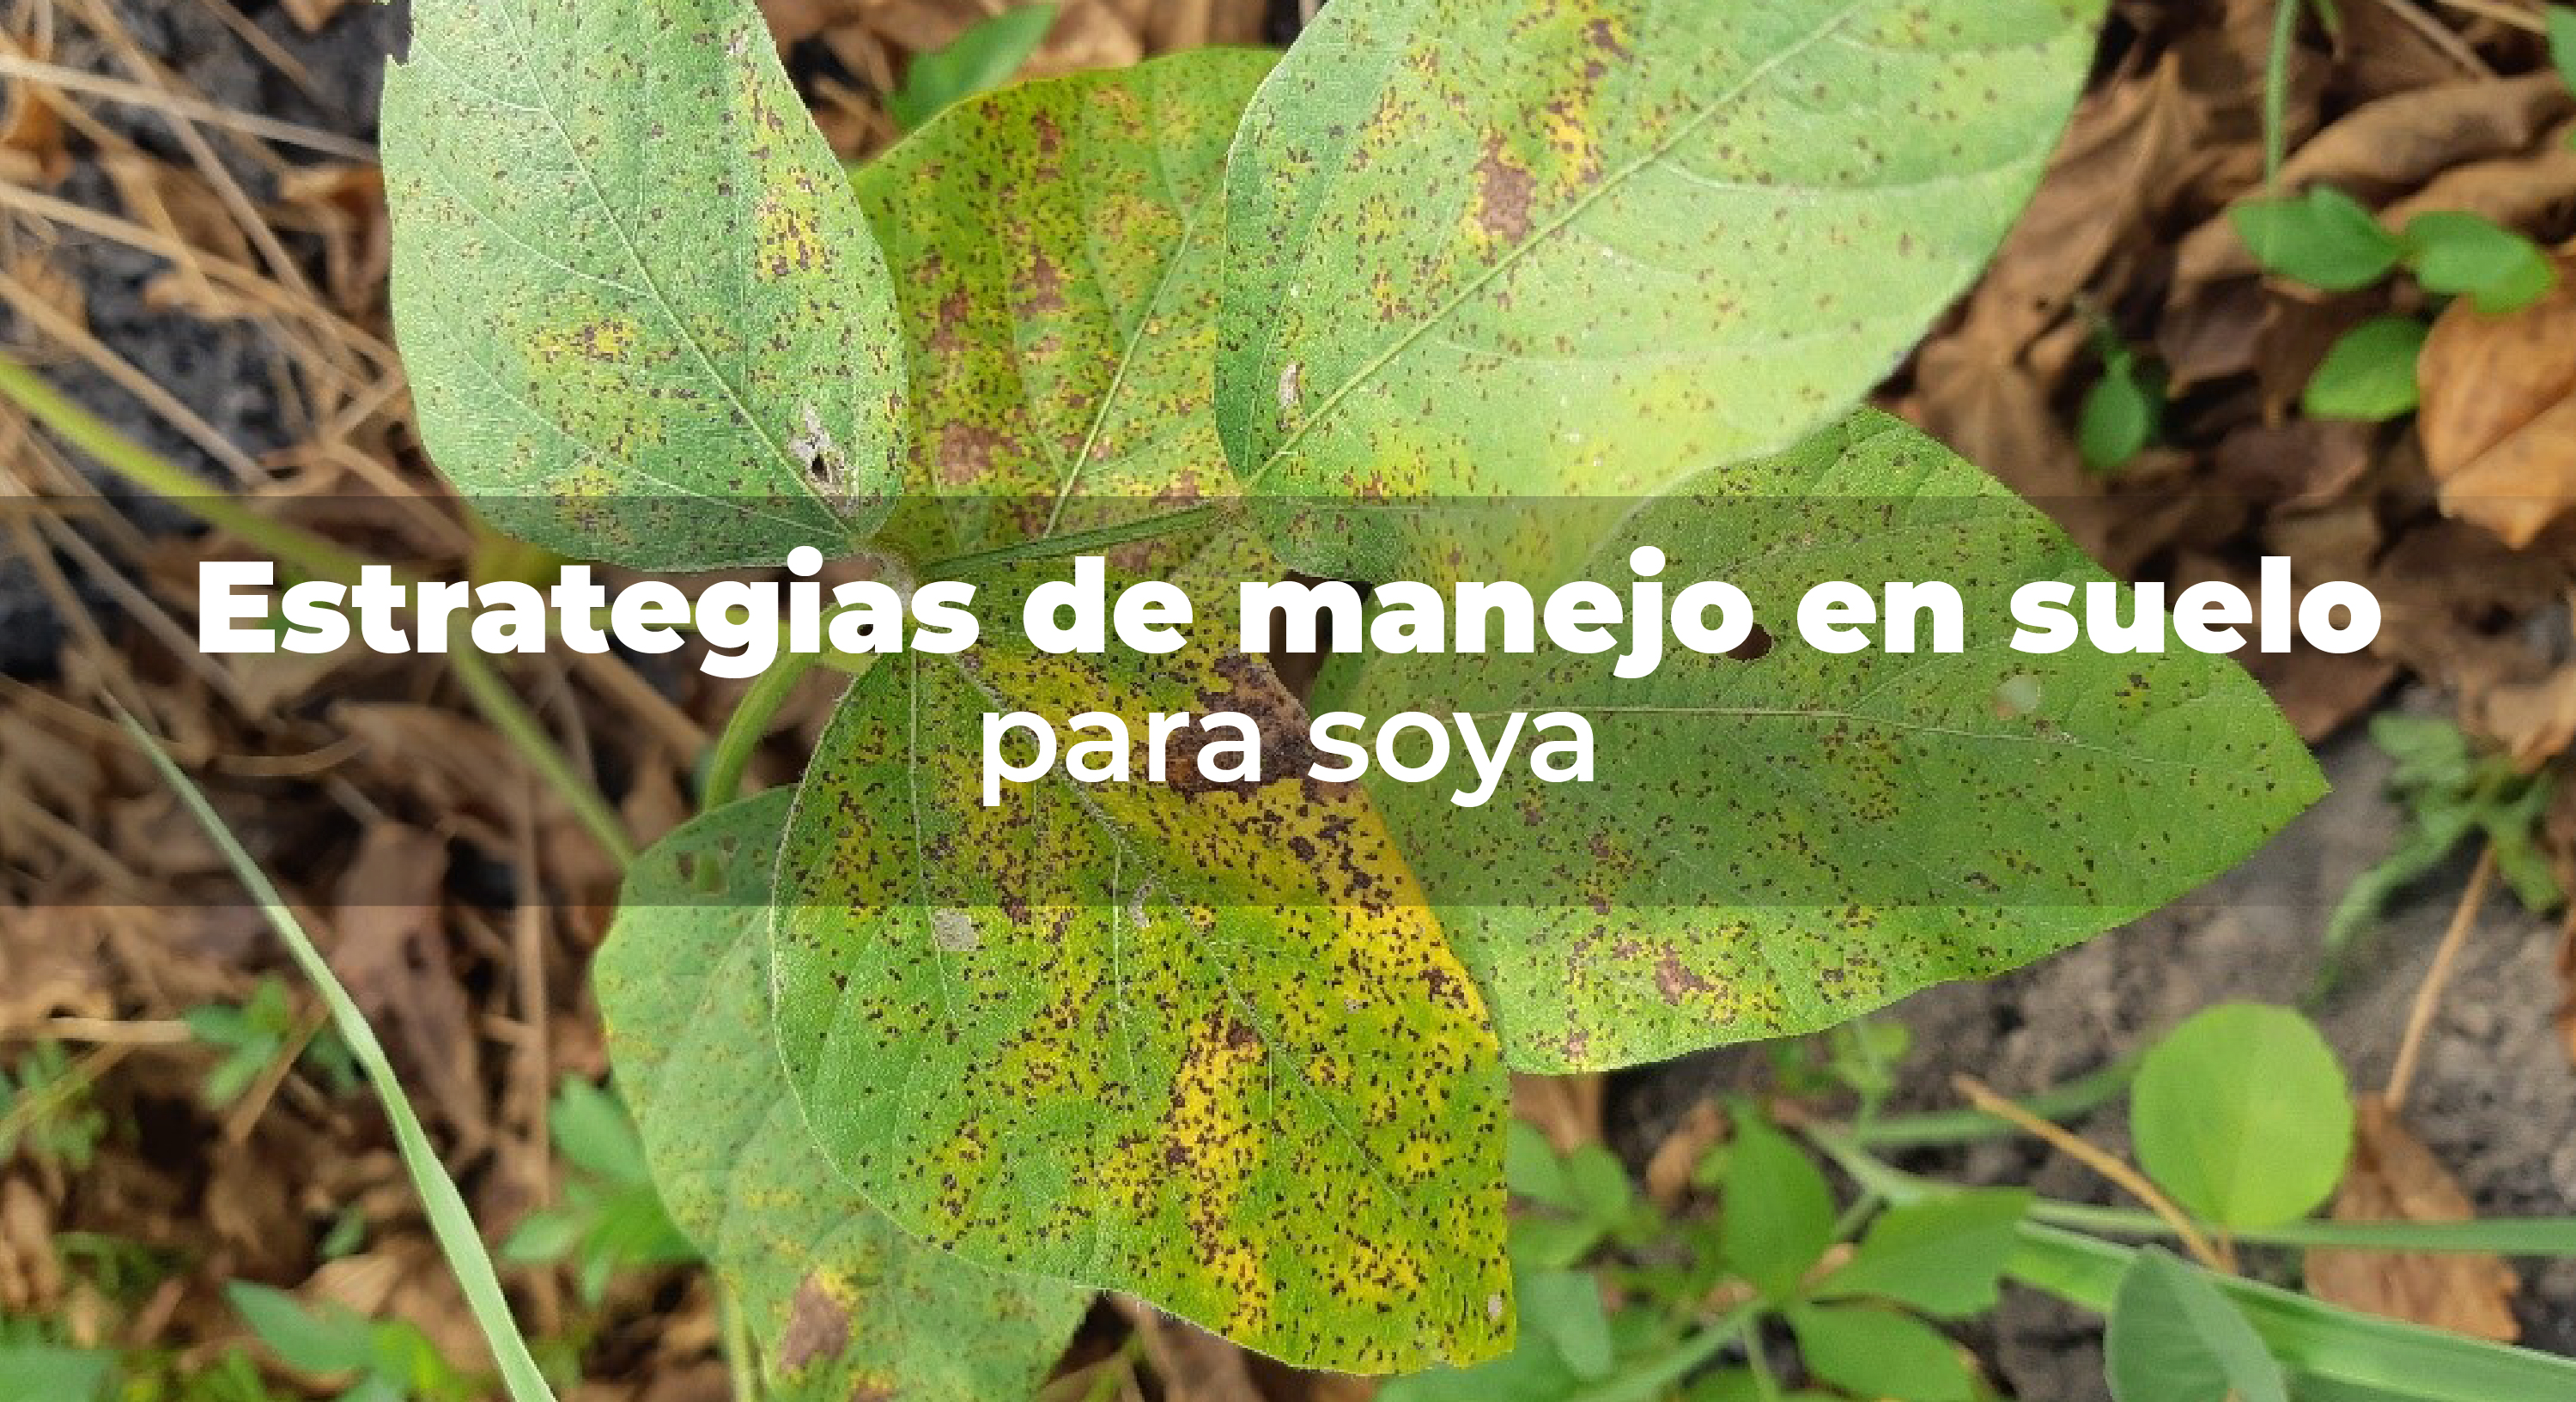 Defoliación, clorosis y necrosis foliar, síntomas característicos de roya astica en el cultivo de soya